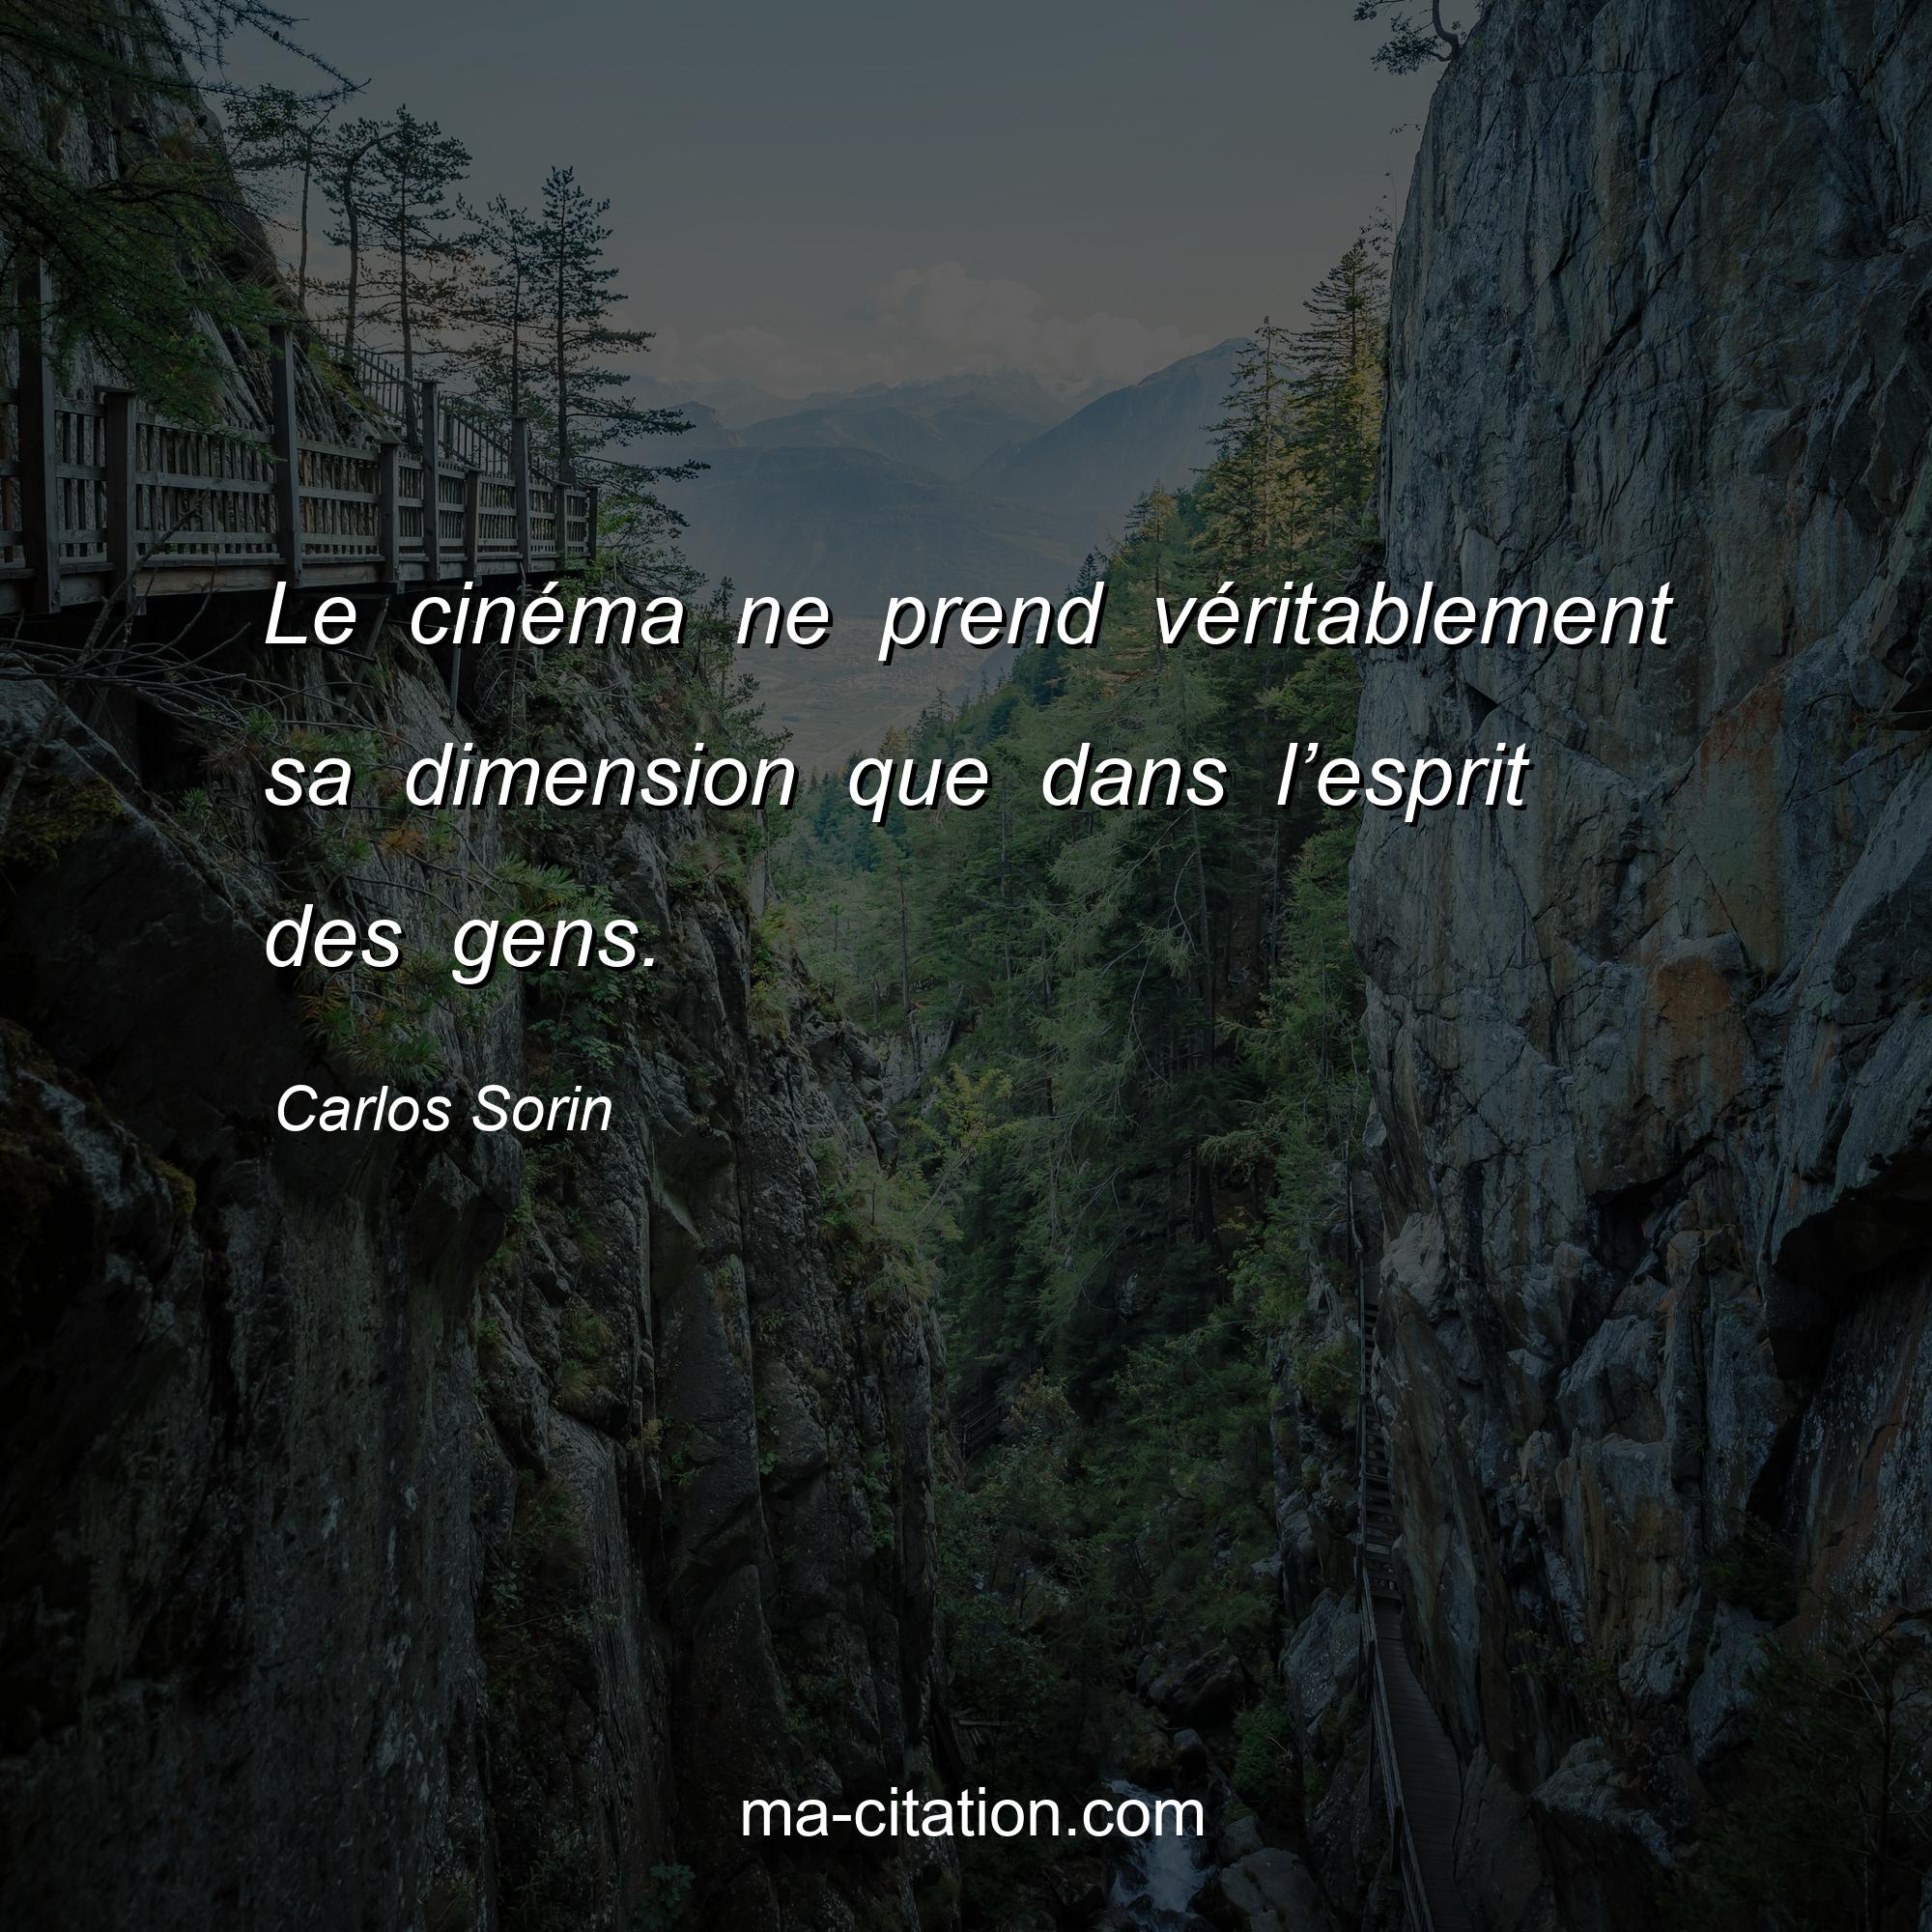 Carlos Sorin : Le cinéma ne prend véritablement sa dimension que dans l’esprit des gens.